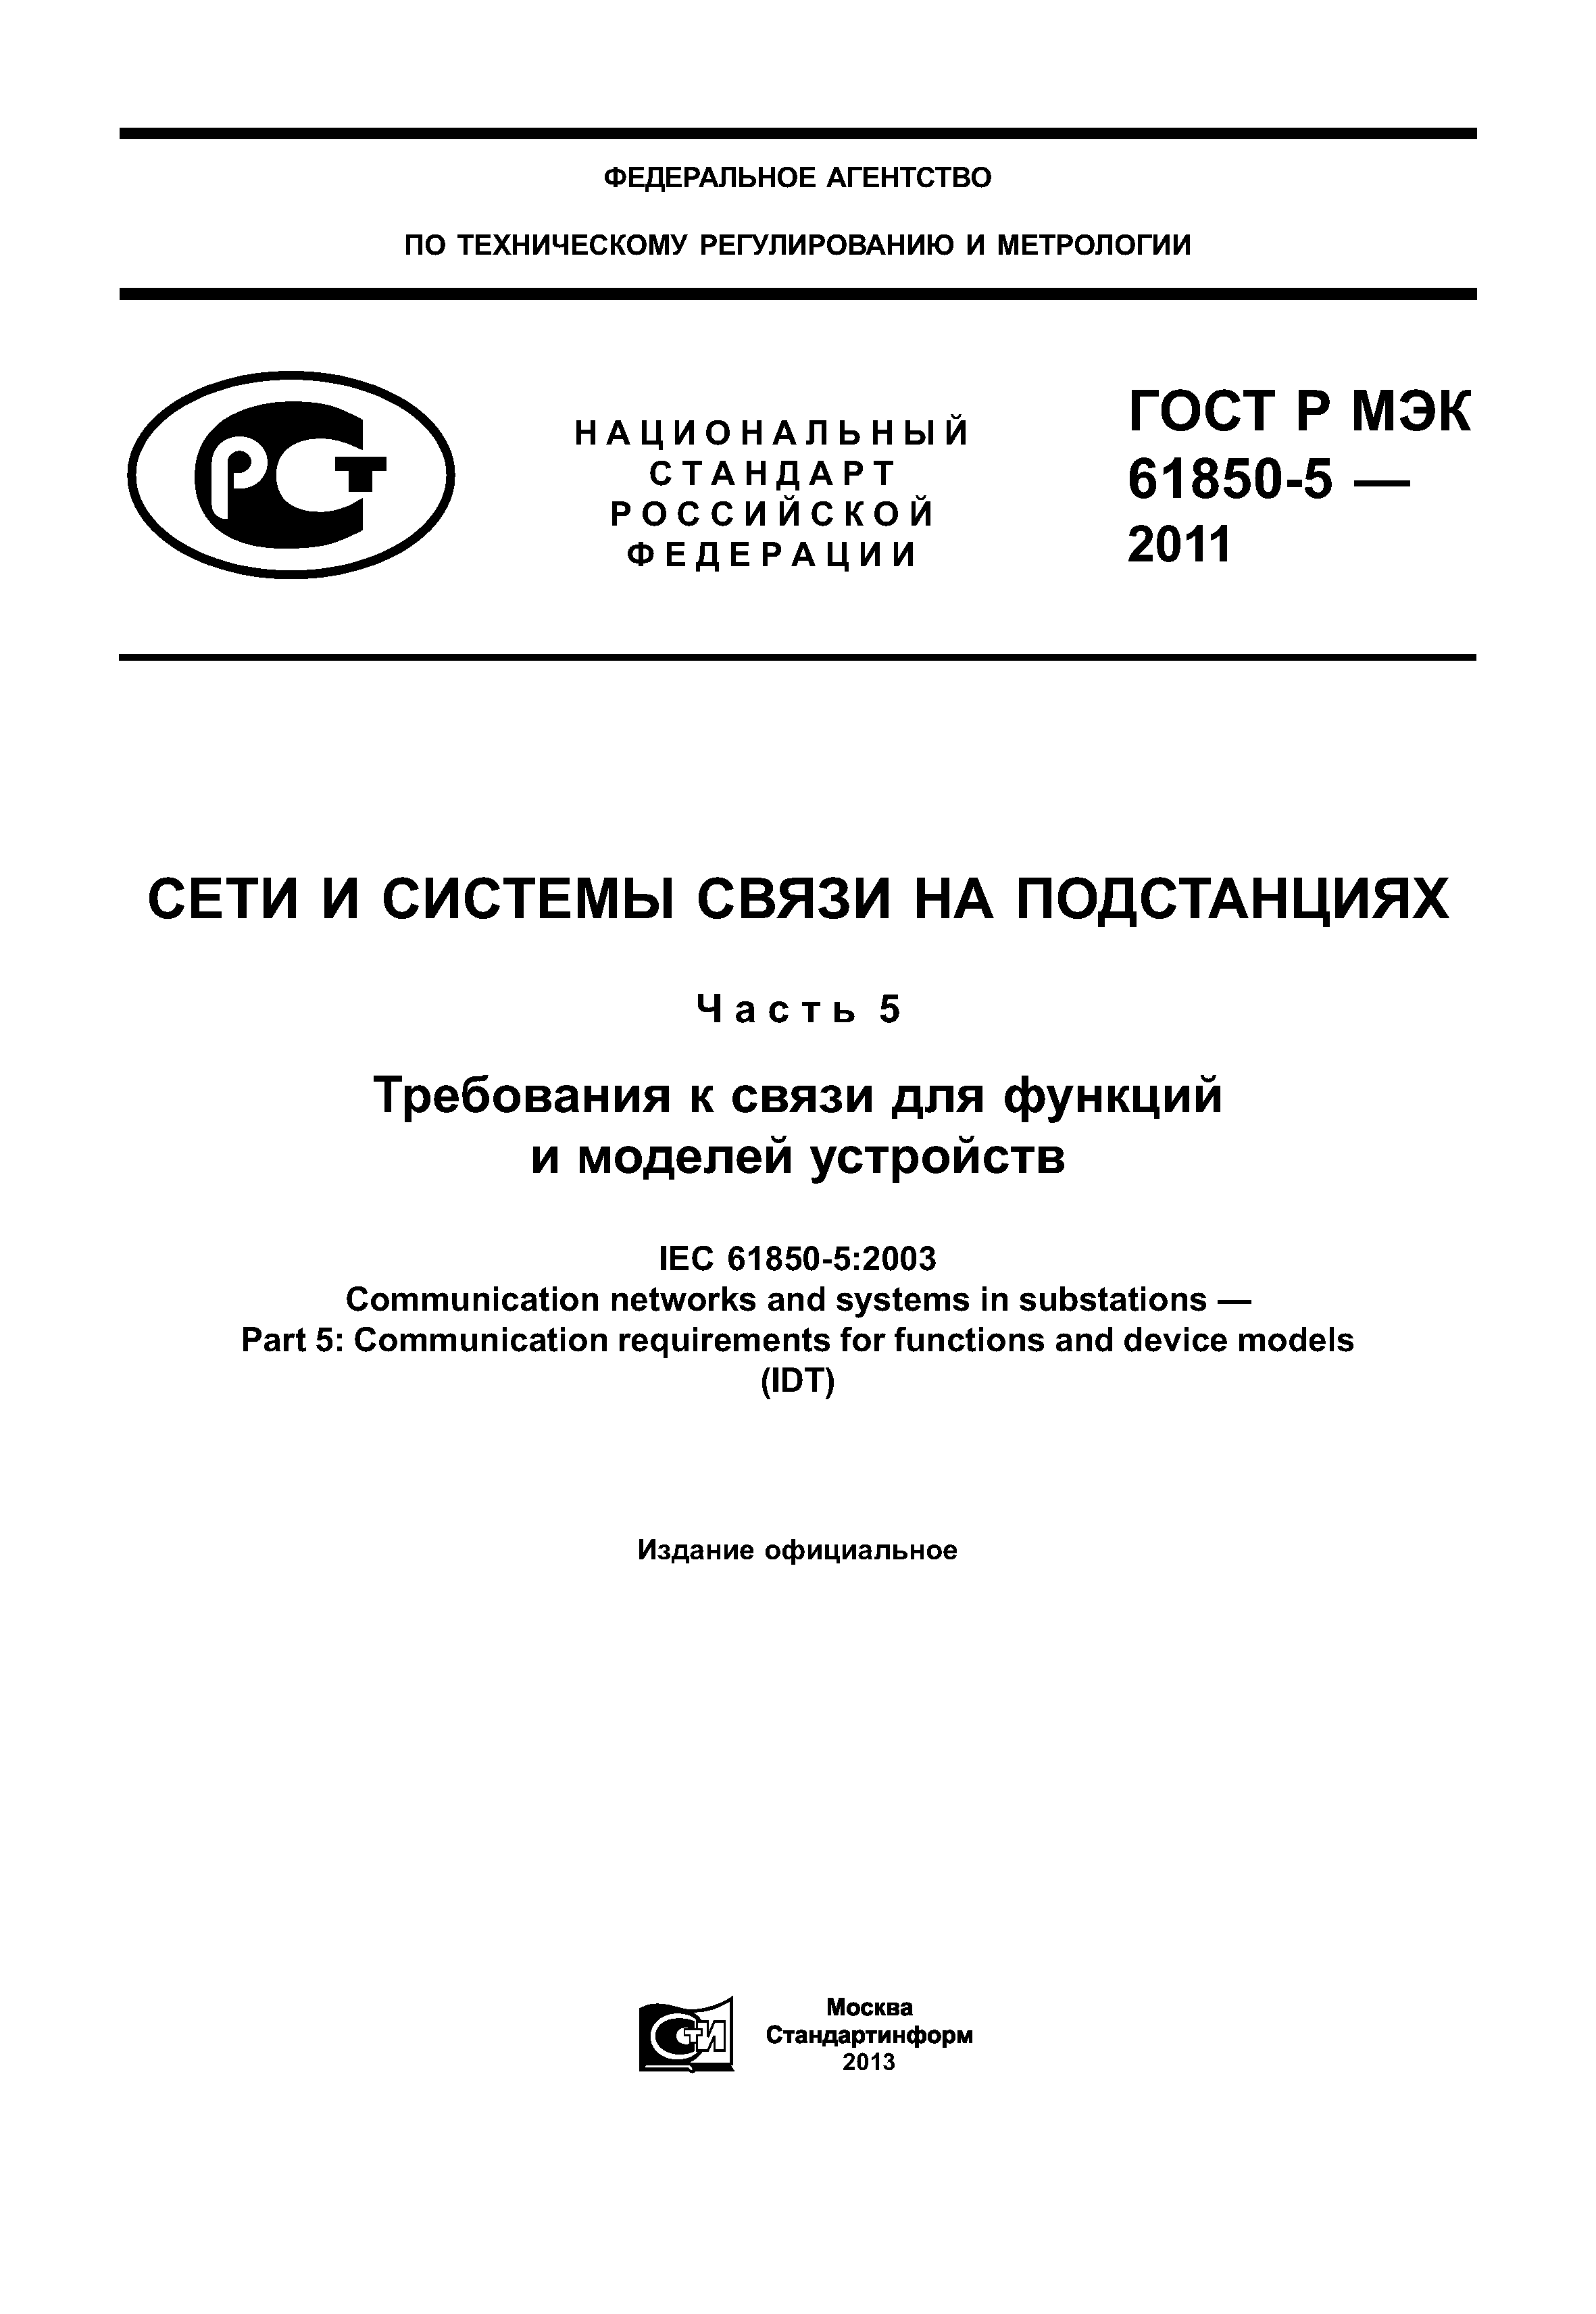 ГОСТ Р МЭК 61850-5-2011